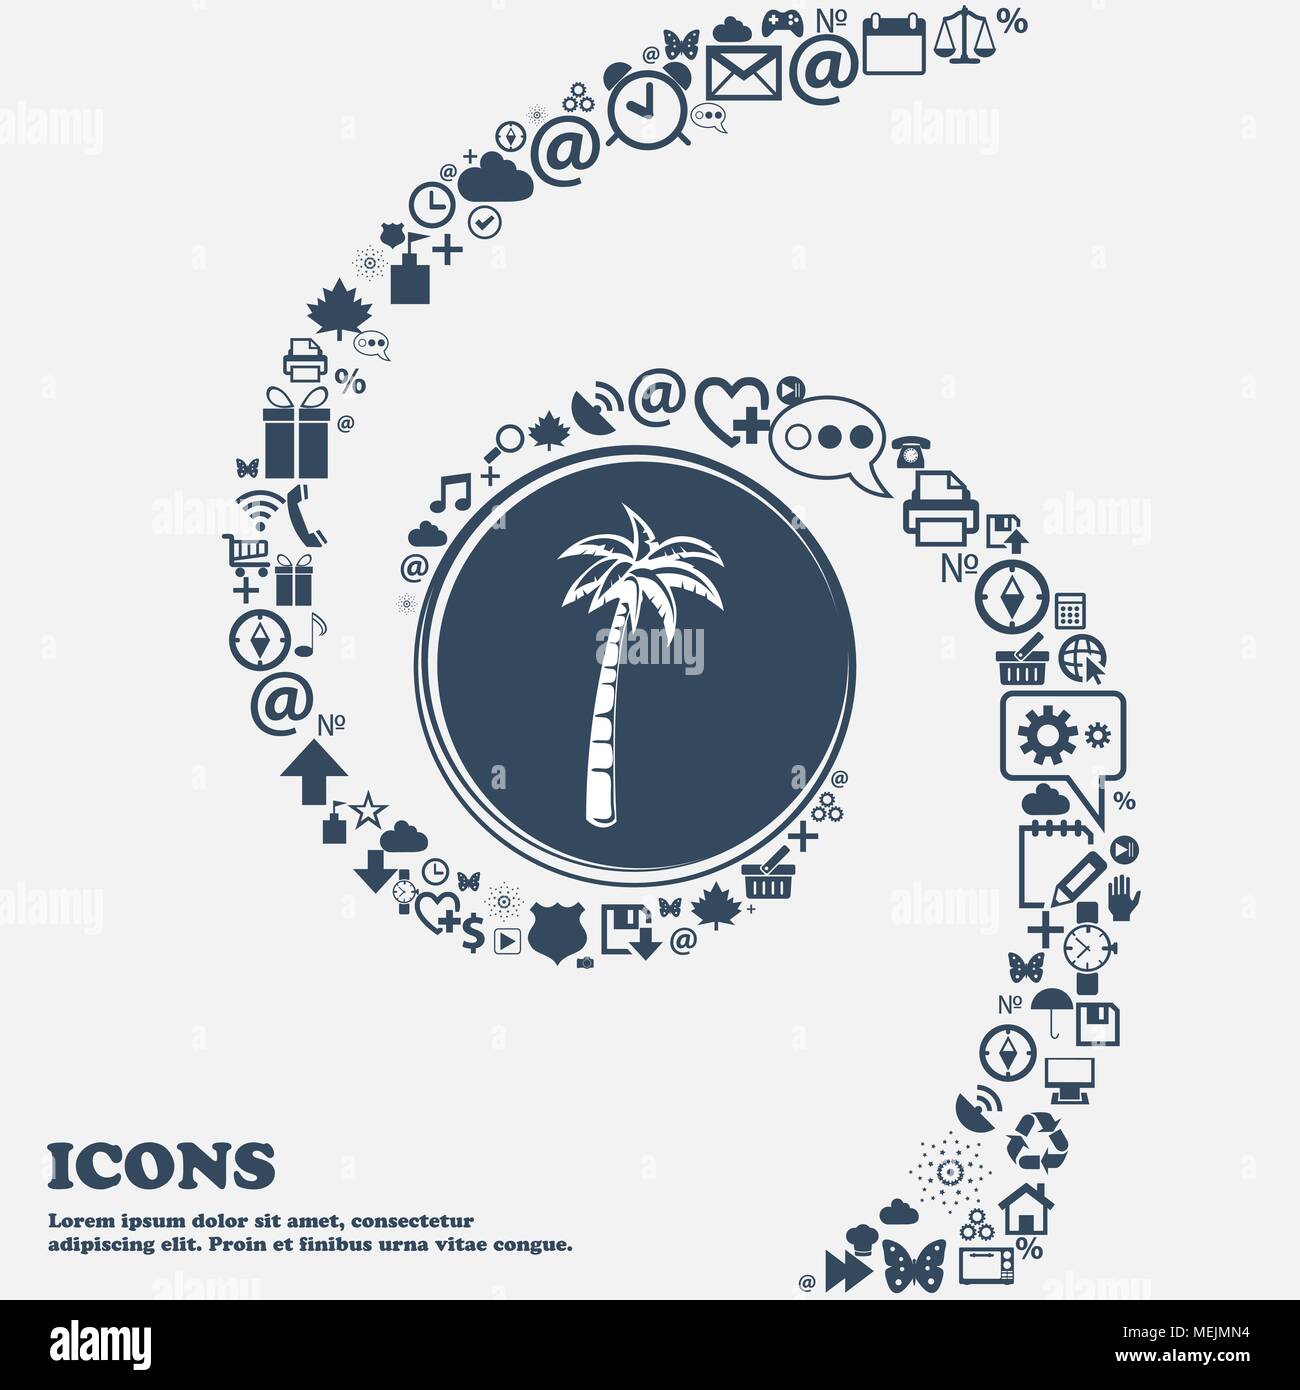 Icona di Palm nel centro. Intorno tanti bei simboli intrecciati in una spirale. È possibile utilizzare ciascuna separatamente per il design. Illustrazione Vettoriale Illustrazione Vettoriale